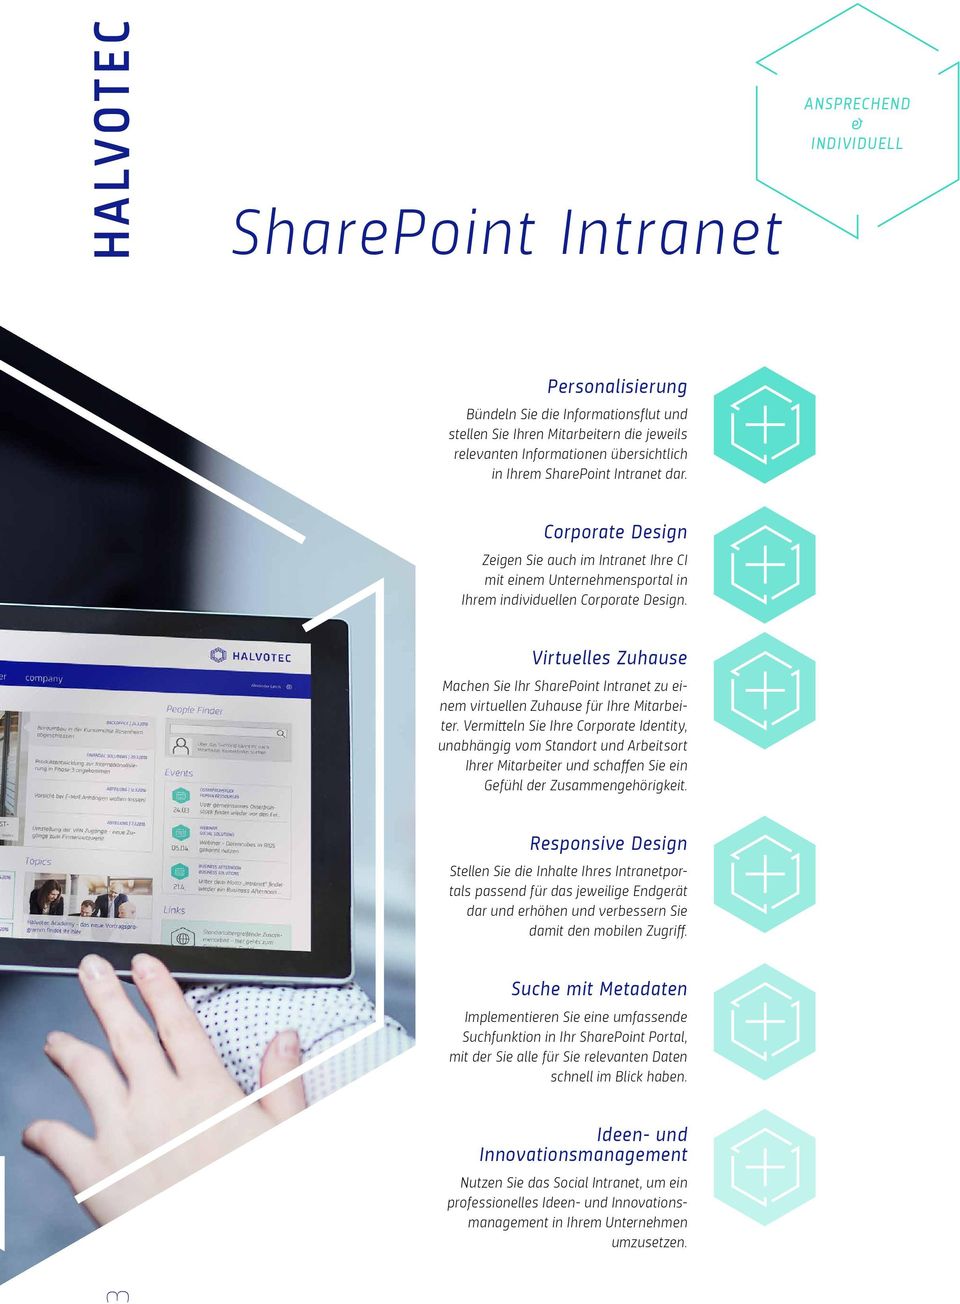 Virtuelles Zuhause Machen Sie Ihr SharePoint Intranet zu einem virtuellen Zuhause für Ihre Mitarbeiter.